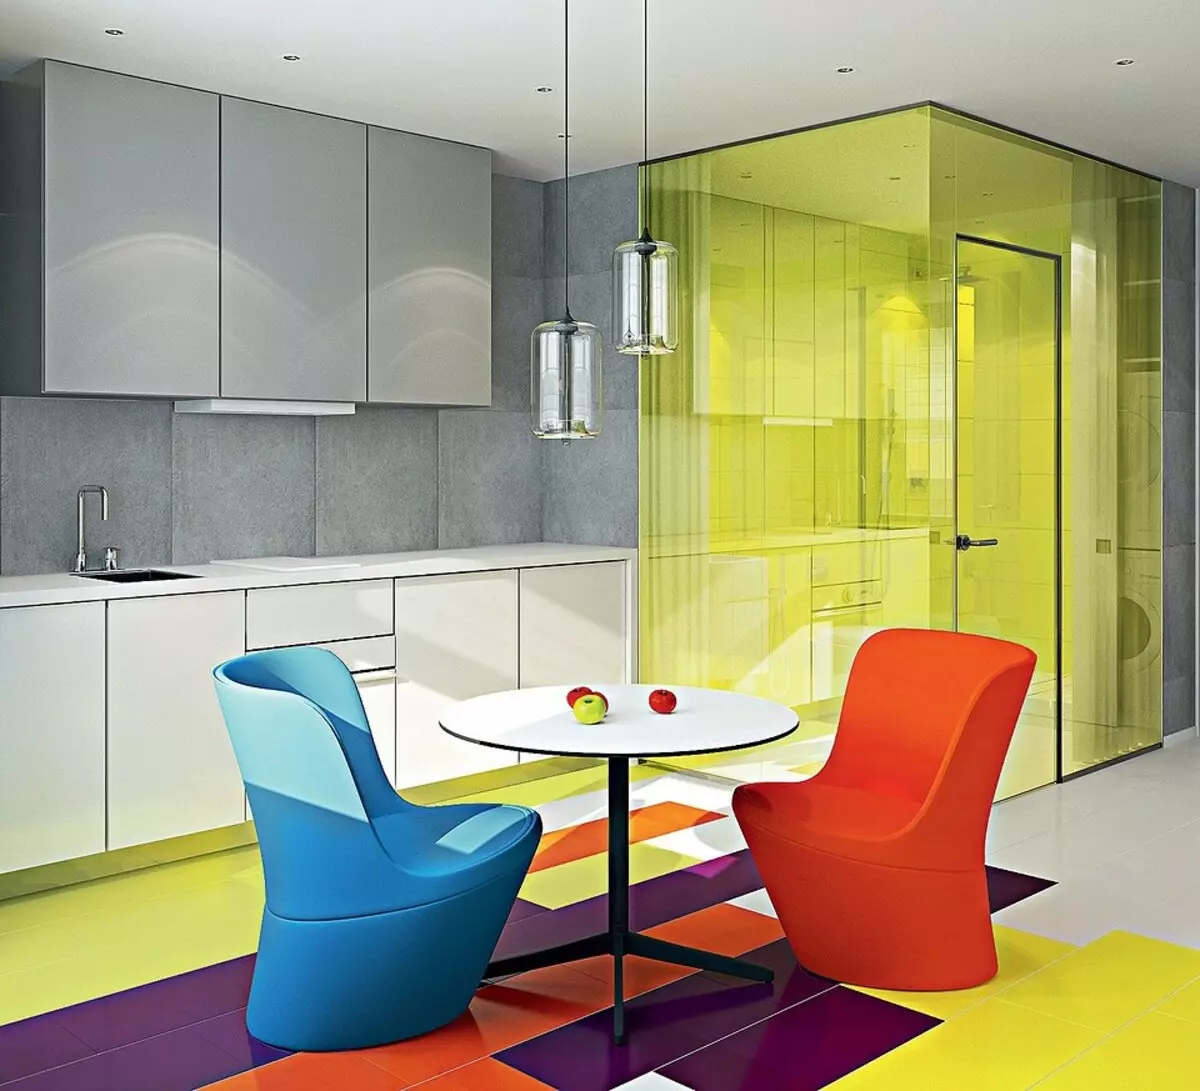 Perabot yang terang dan partition kaca: Interior minimalis dengan elemen seni pop 9981_6